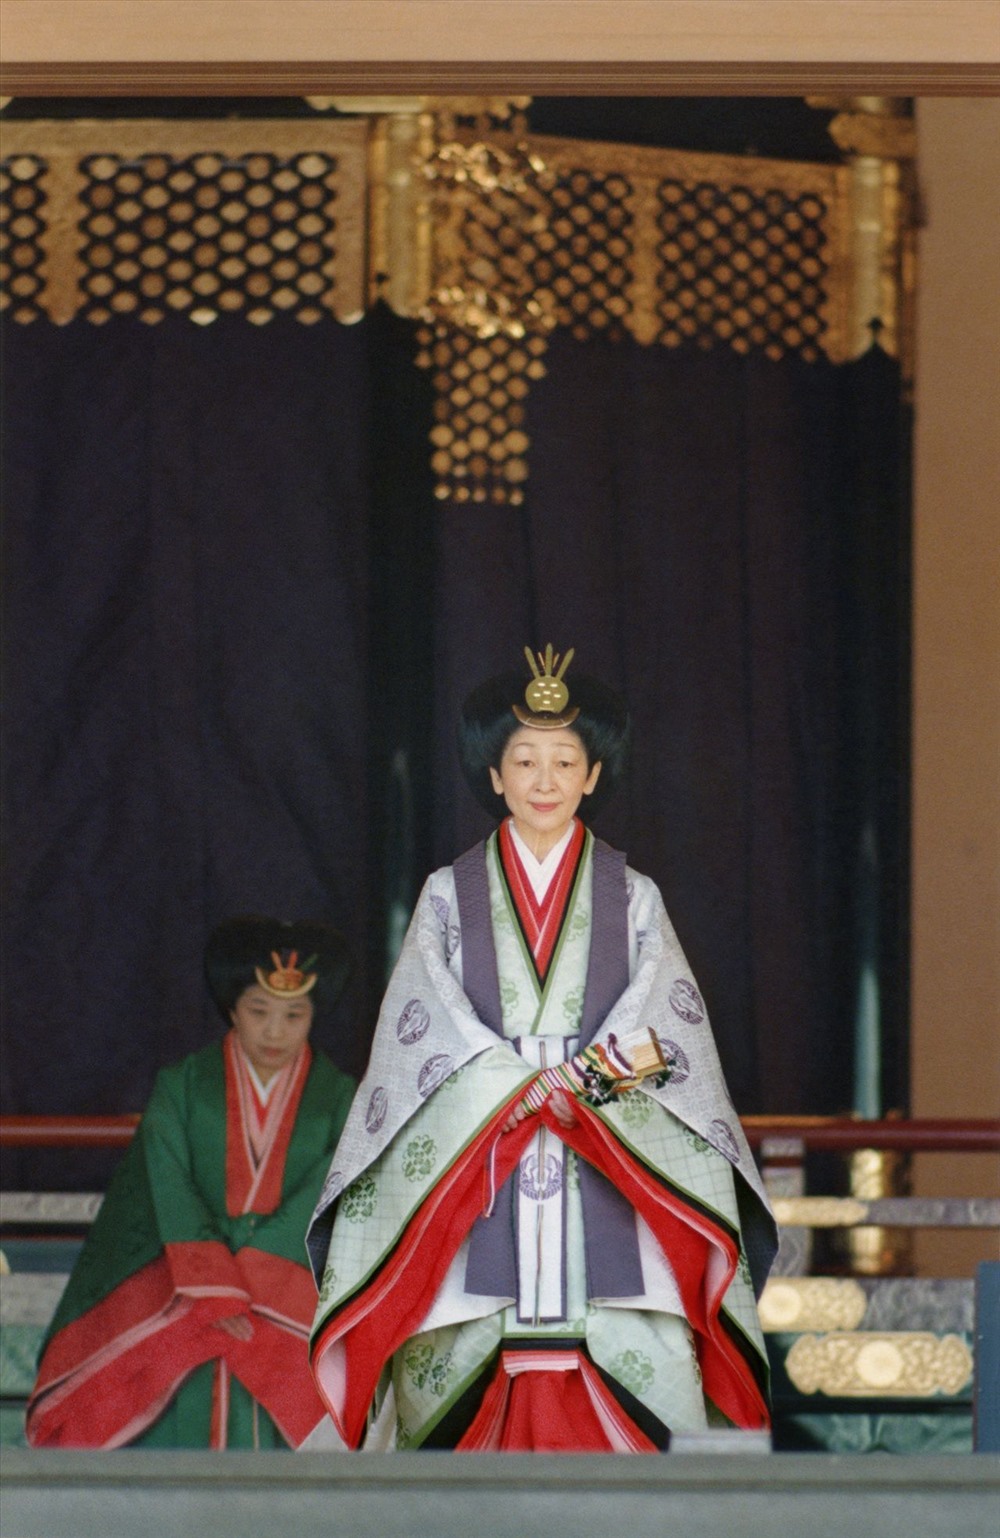 Hoàng hậu Michiko đang cầm một chiếc quạt trong lễ đăng quang của Nhật hoàng ngày 12.11.1990. Tóc của bà được vấn tỉ mỉ theo kiểu  osuberakashi. Ảnh: Jiji.